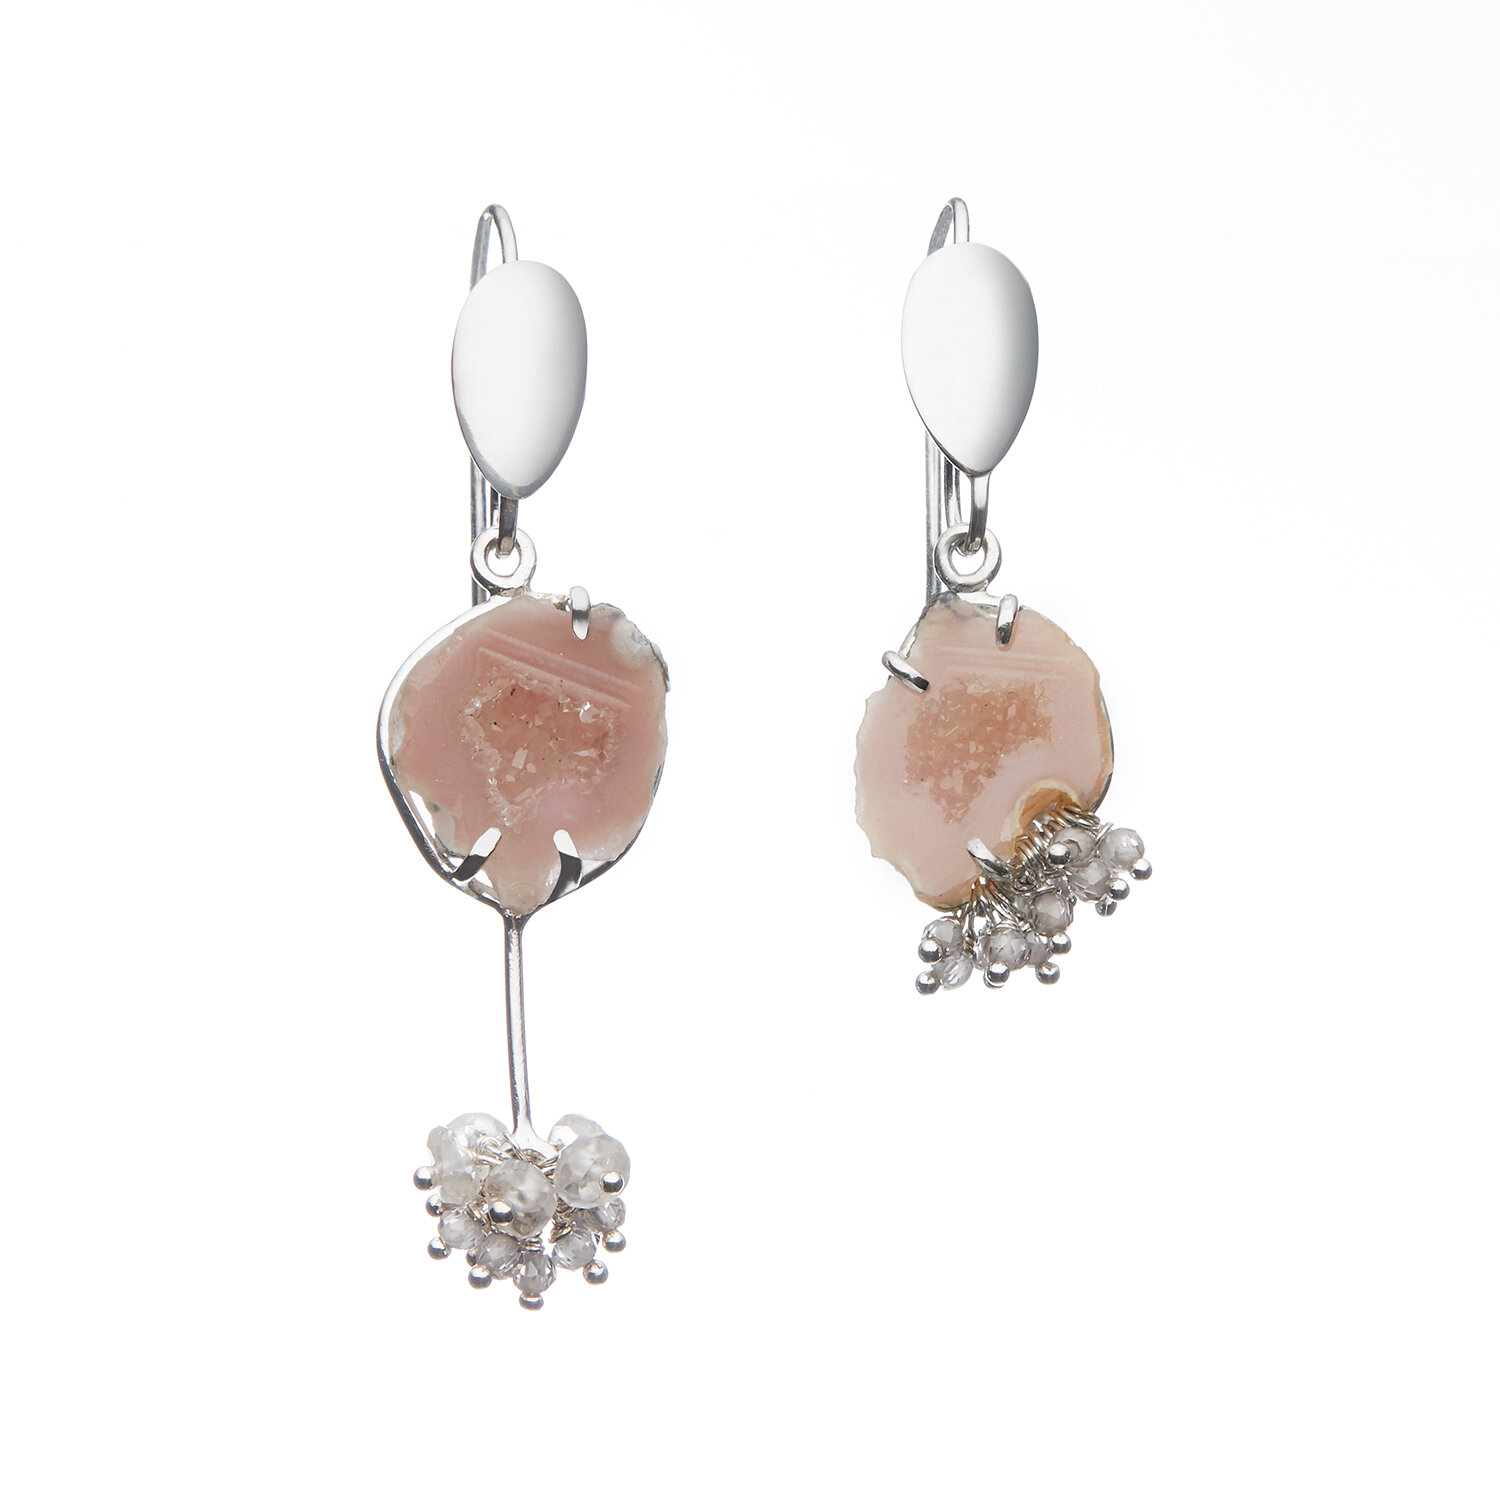 Coppelia earrings